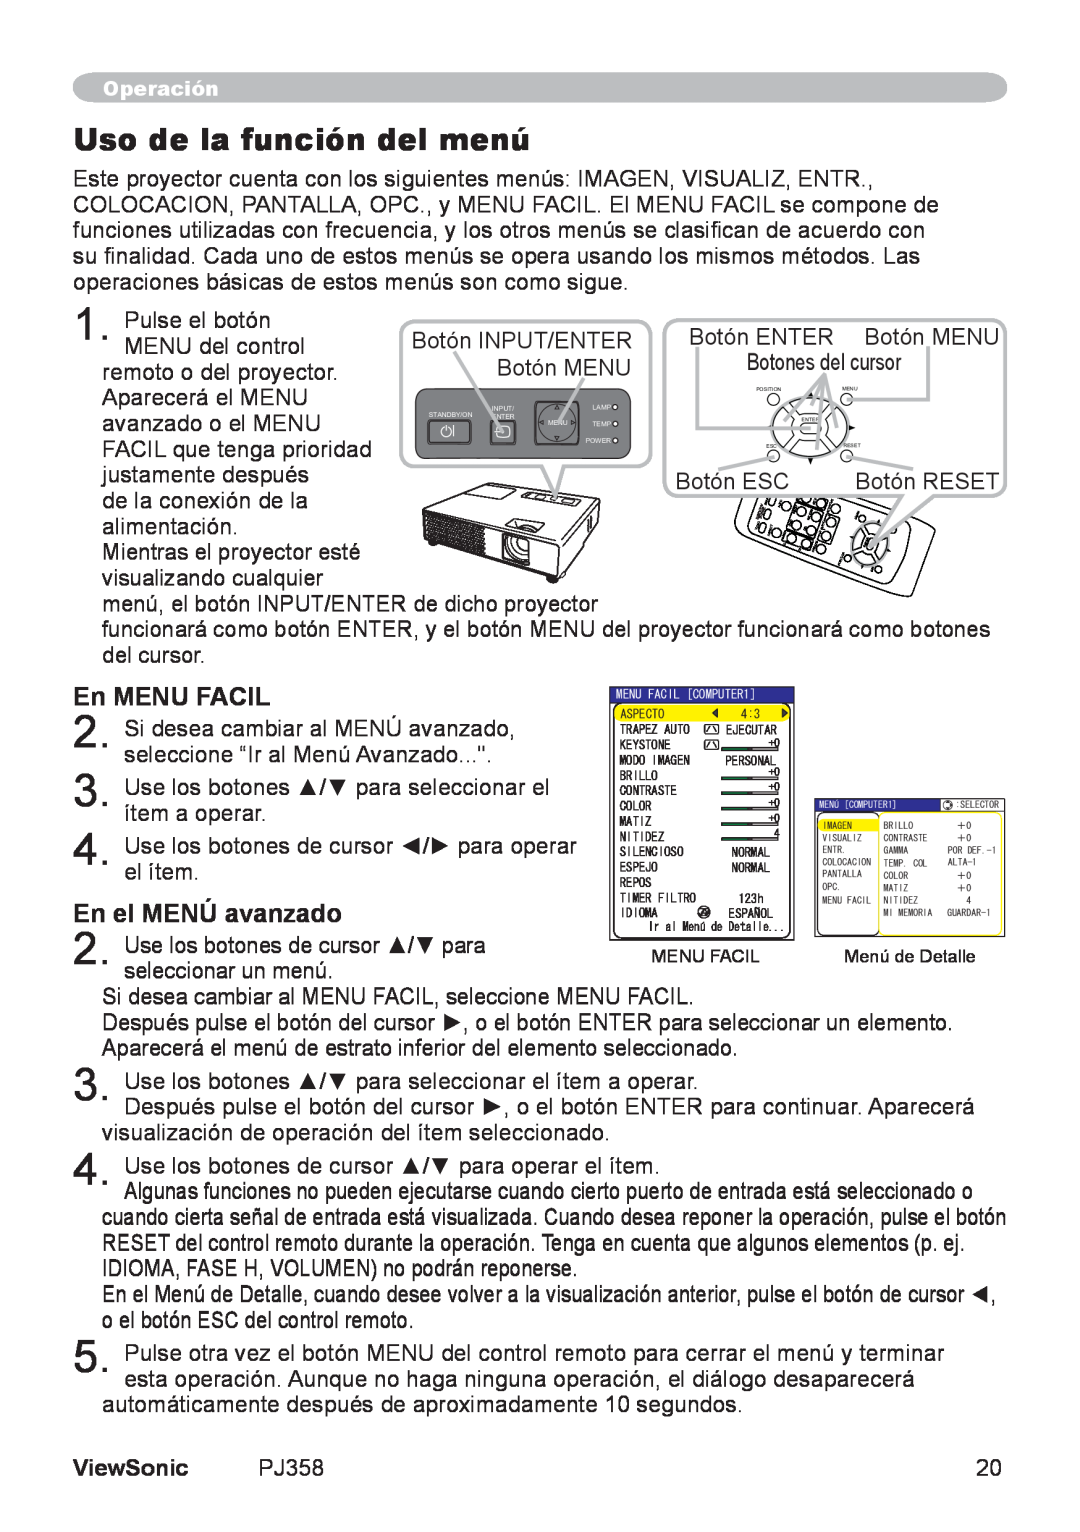 ViewSonic PJ358, VS11611 manual Uso de la función del menú, En MENU FACIL, En el MENÚ avanzado, ViewSonic 